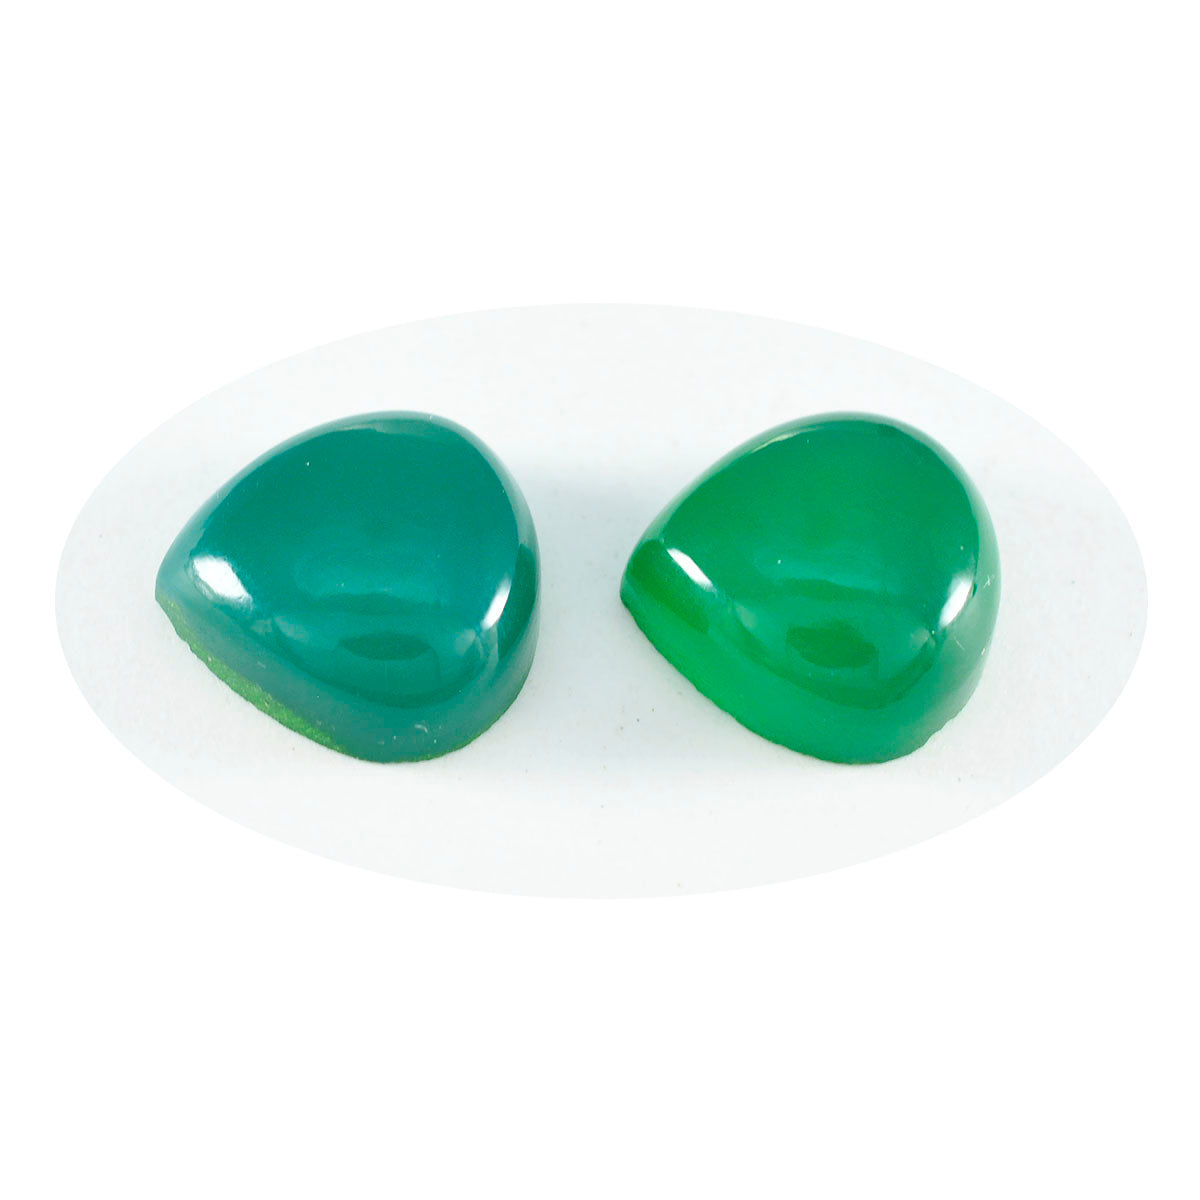 Riyogems 1PC Green Onyx Cabochon 11x11 mm Heart Shape wonderful Quality Gemstone